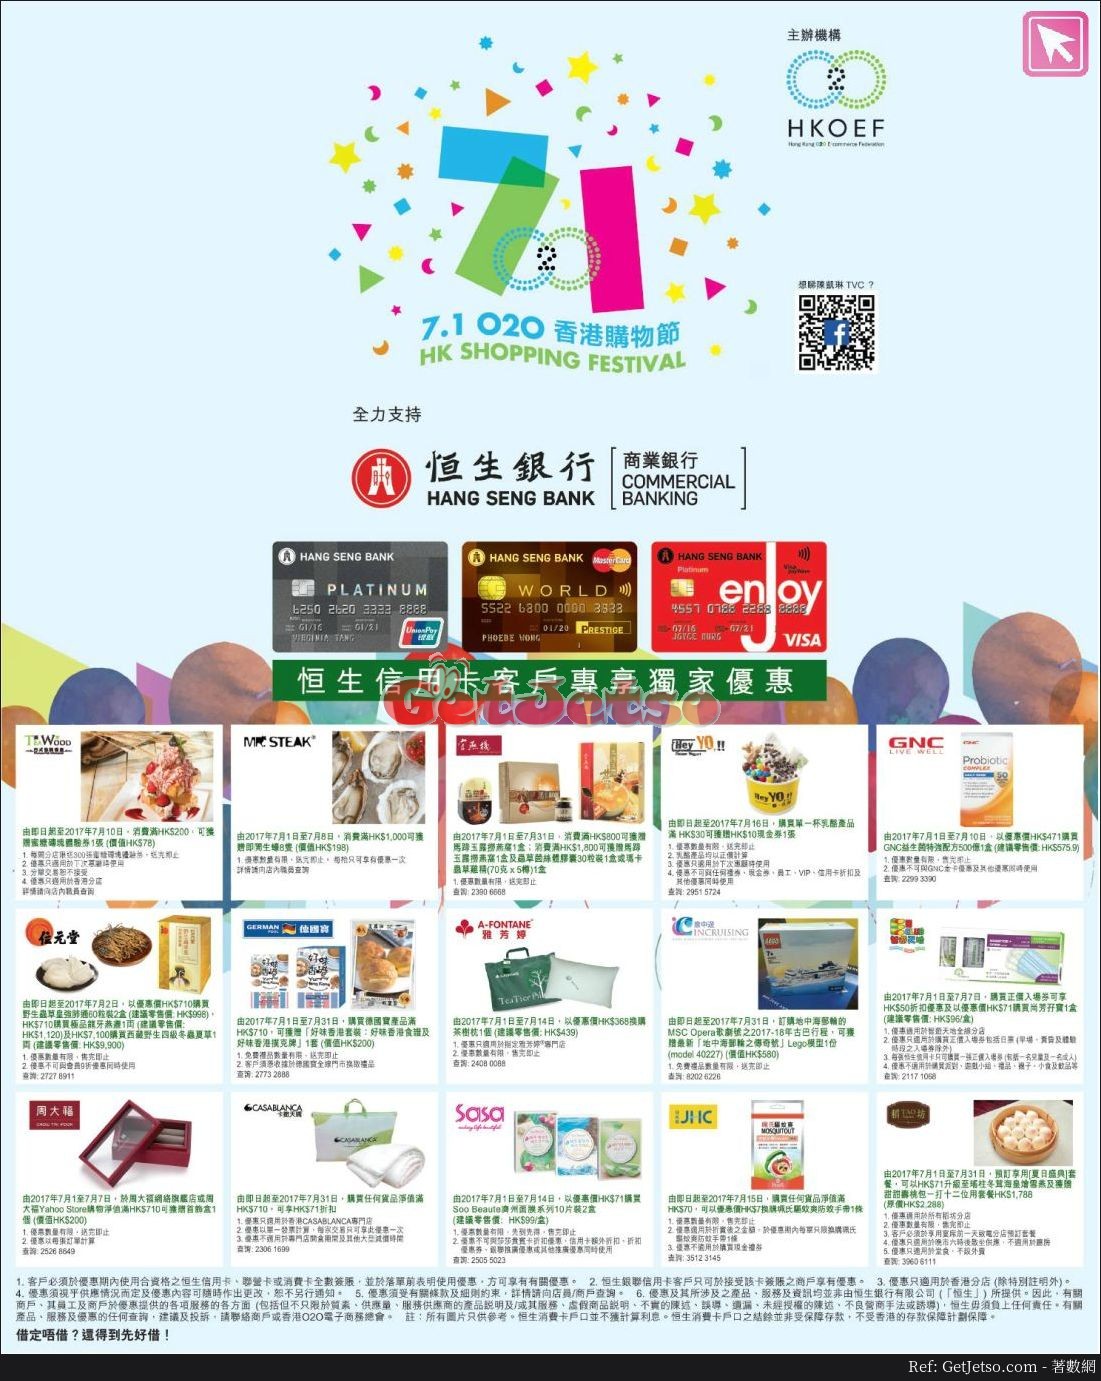 恒生信用卡7.1香港購物節優惠(至17年7月31日)圖片1